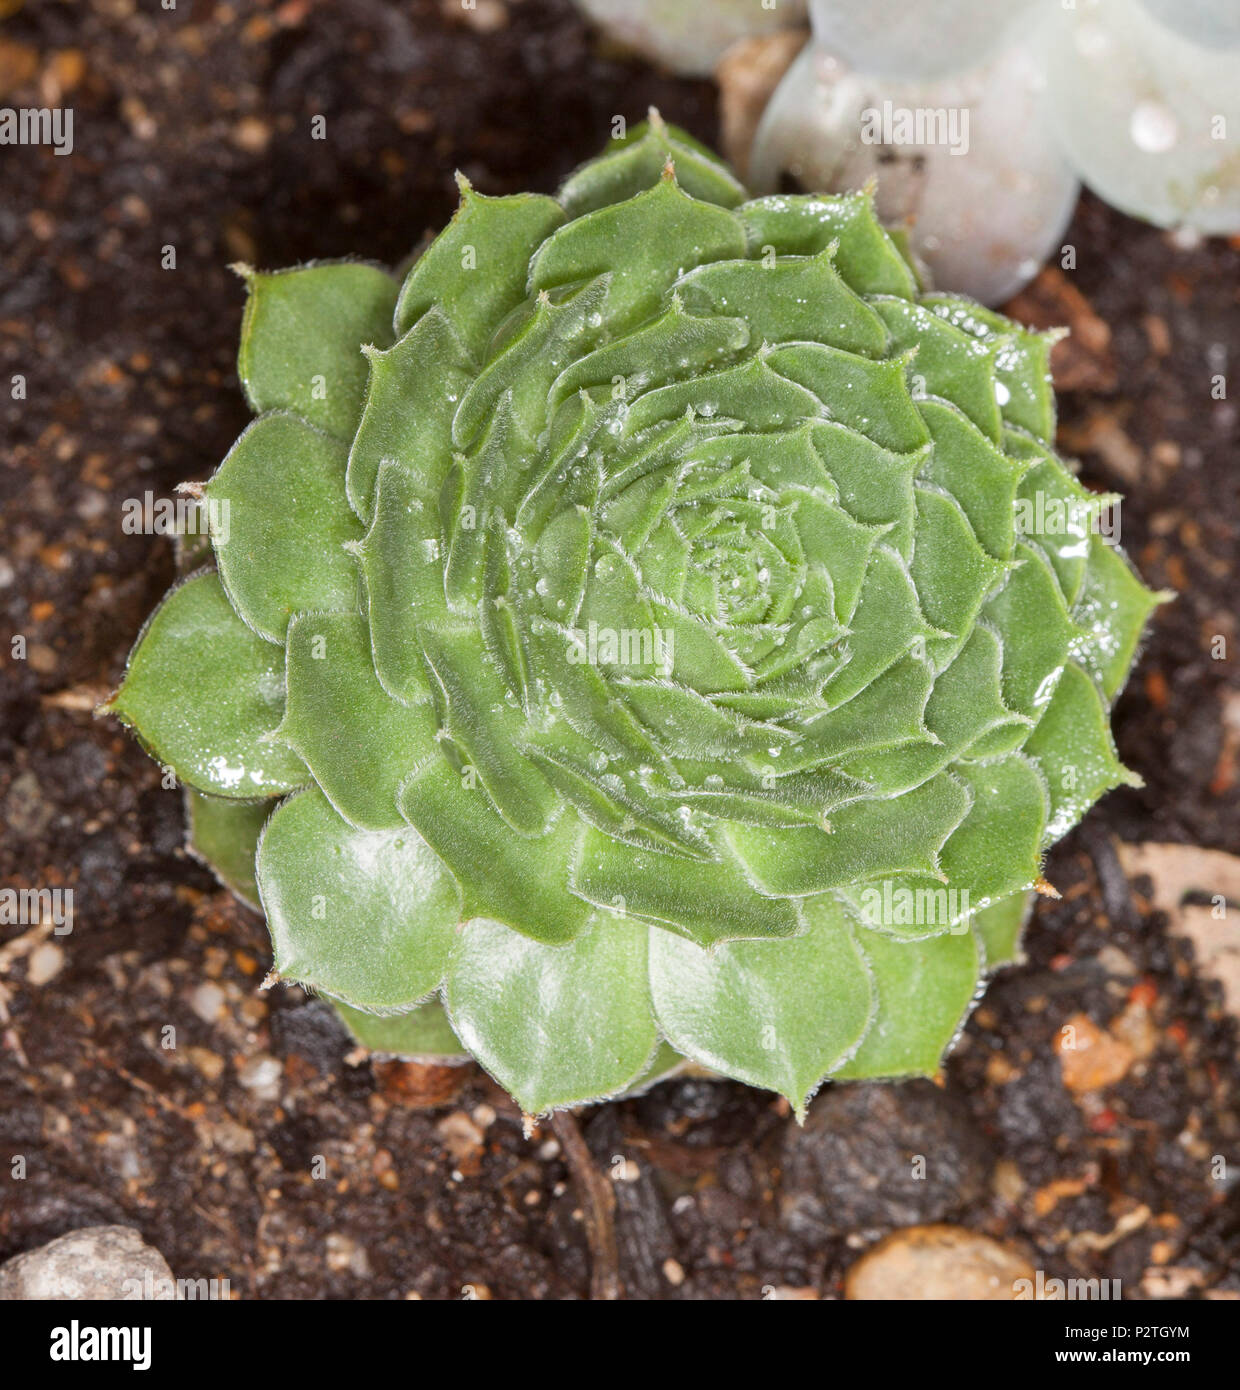 Plante grasse décorative, Sempervivum 'plus' Miel plante xérophile, avec des feuilles vert brillant en croissant rosette symétrique Banque D'Images